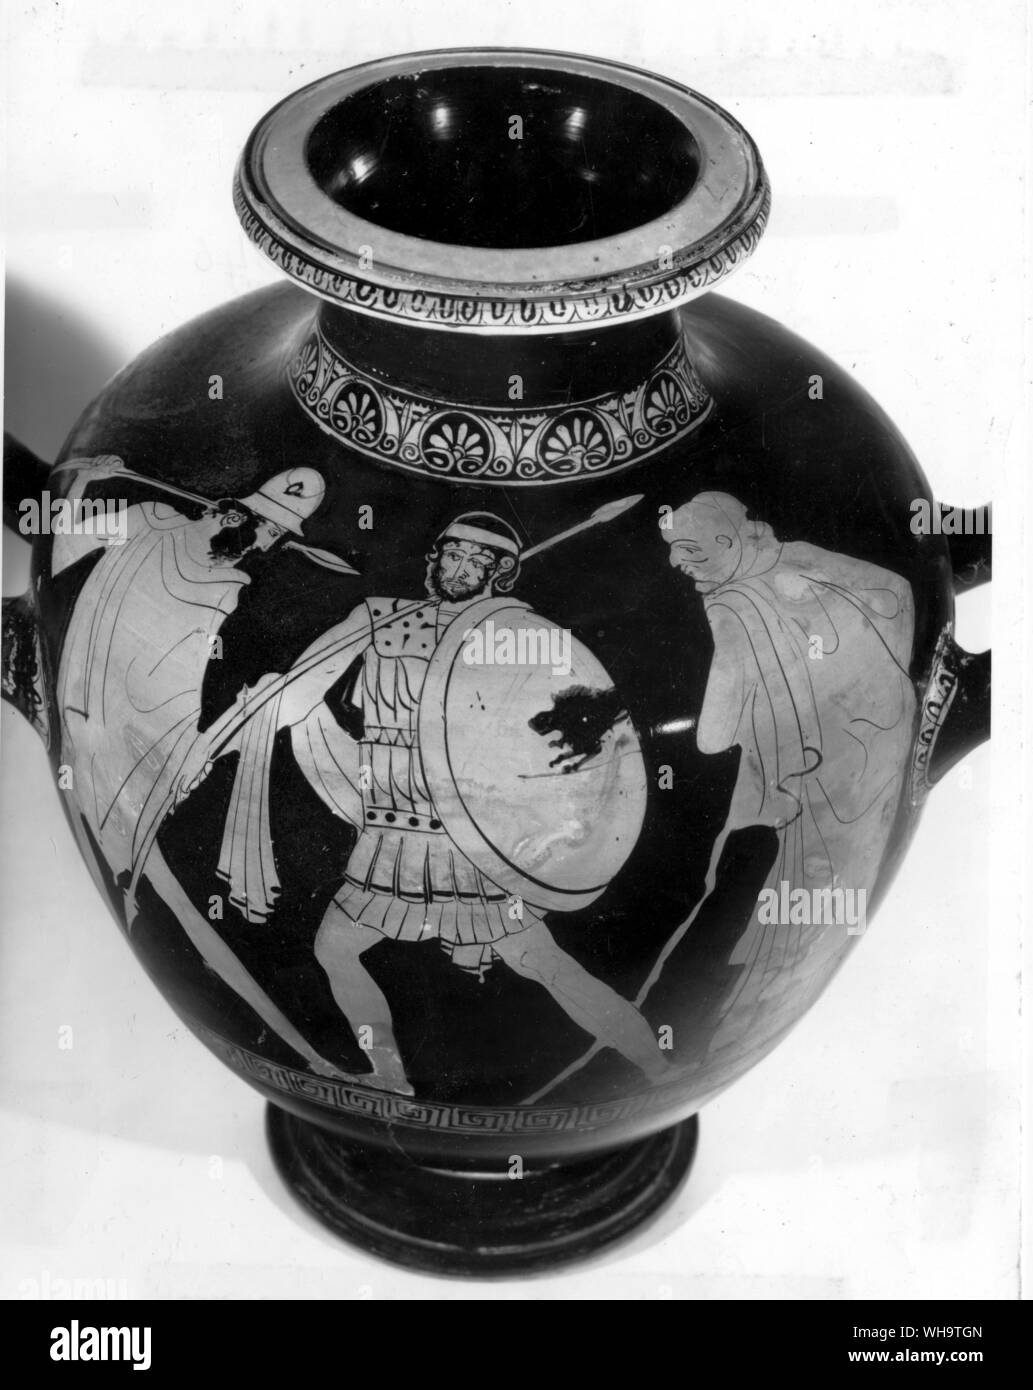 Agamemnon, Commander-in-chief der griechischen Streitkräfte gegen Troja. Er heiratete Klytämnestra, die aischylos eine gute Figur macht im Gegensatz zu ihren schwachen Obwohl polternden Liebhaber Aegisth; so dass, wenn Sie zum Mord an Agamemnon verschworen, die Verantwortung wurde Ihre. Stockfoto